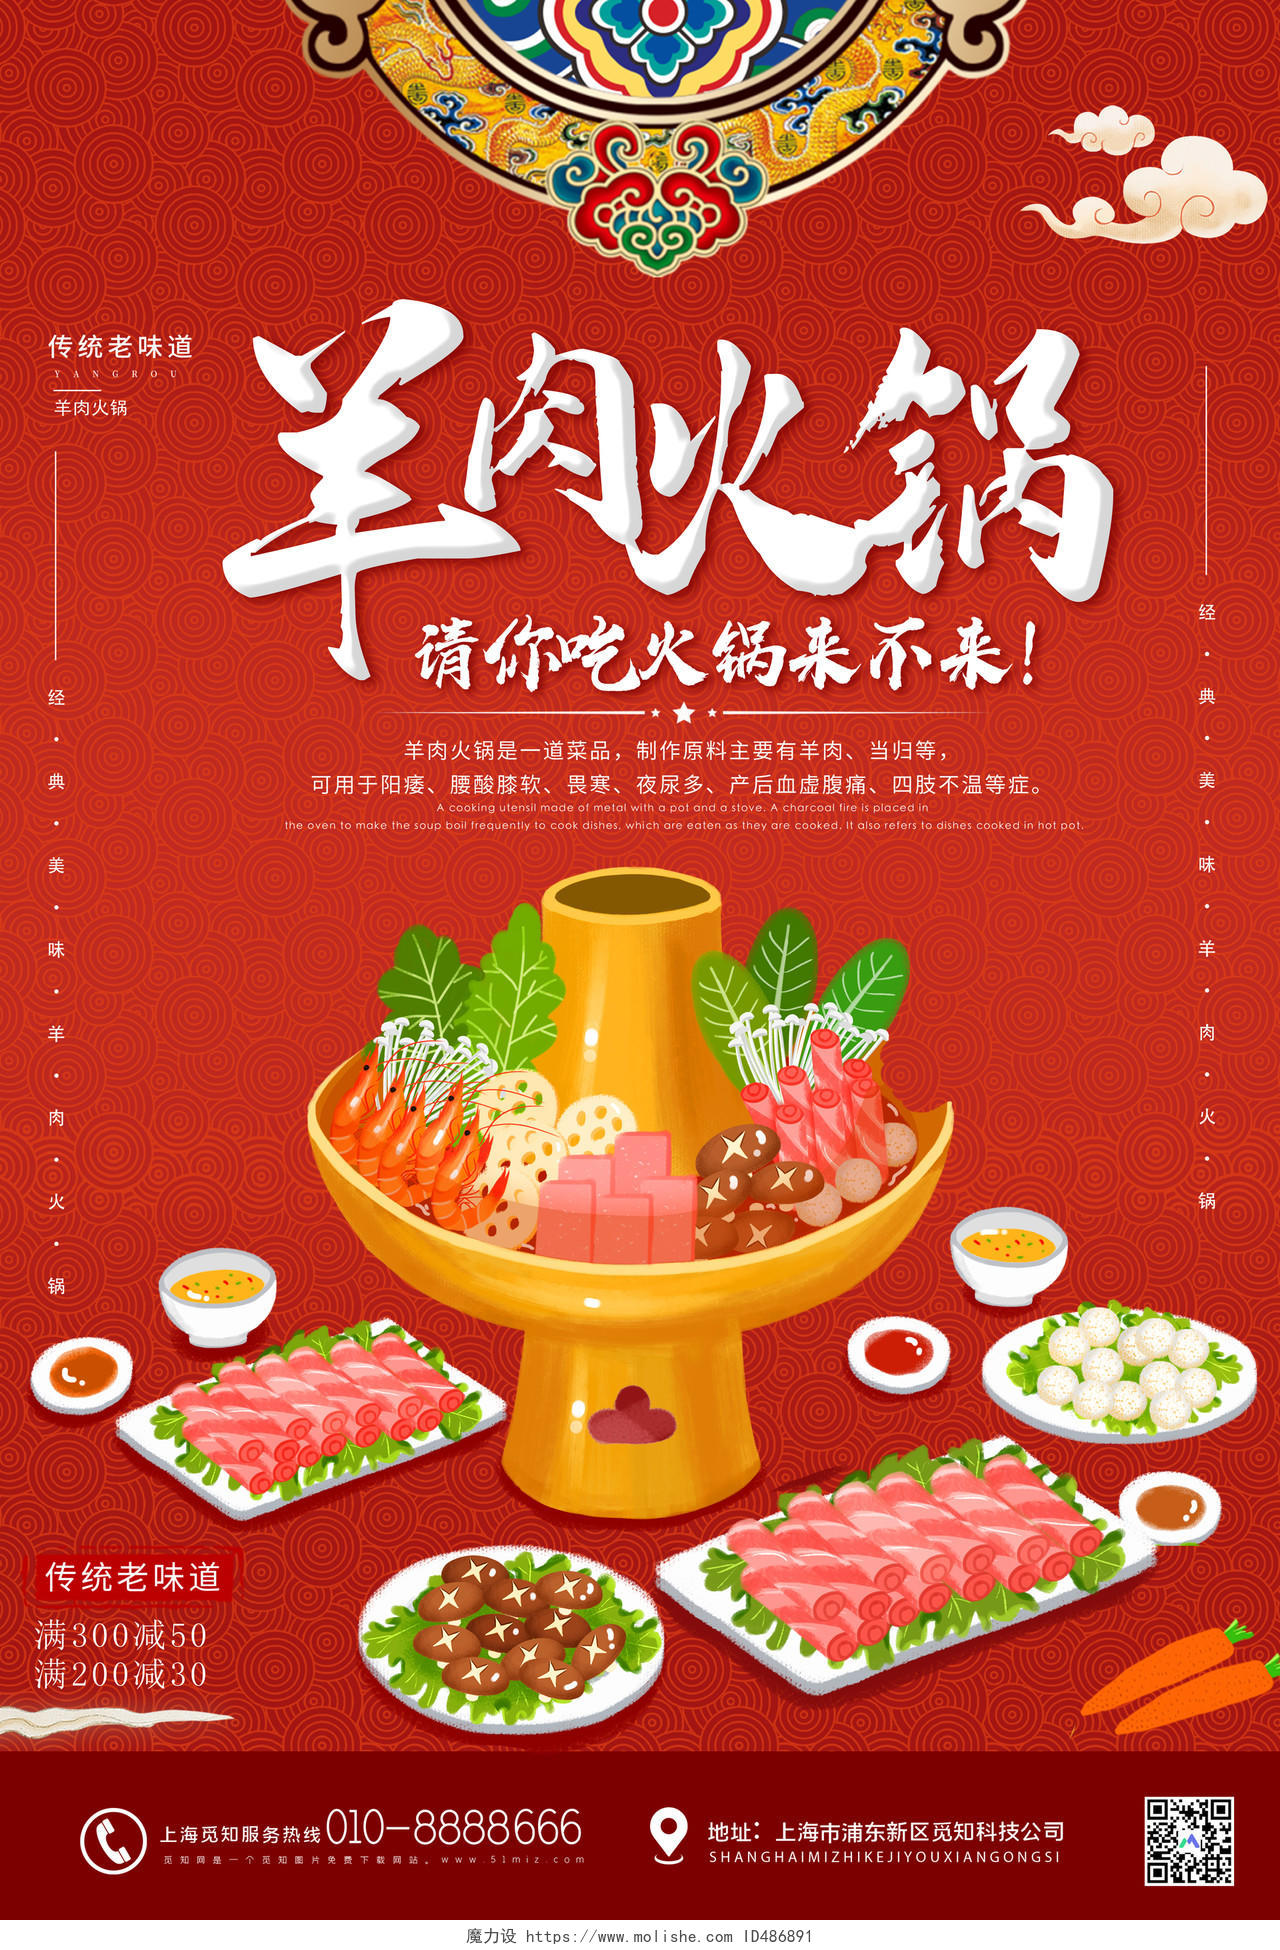 红色简约羊肉火锅传统味道海报